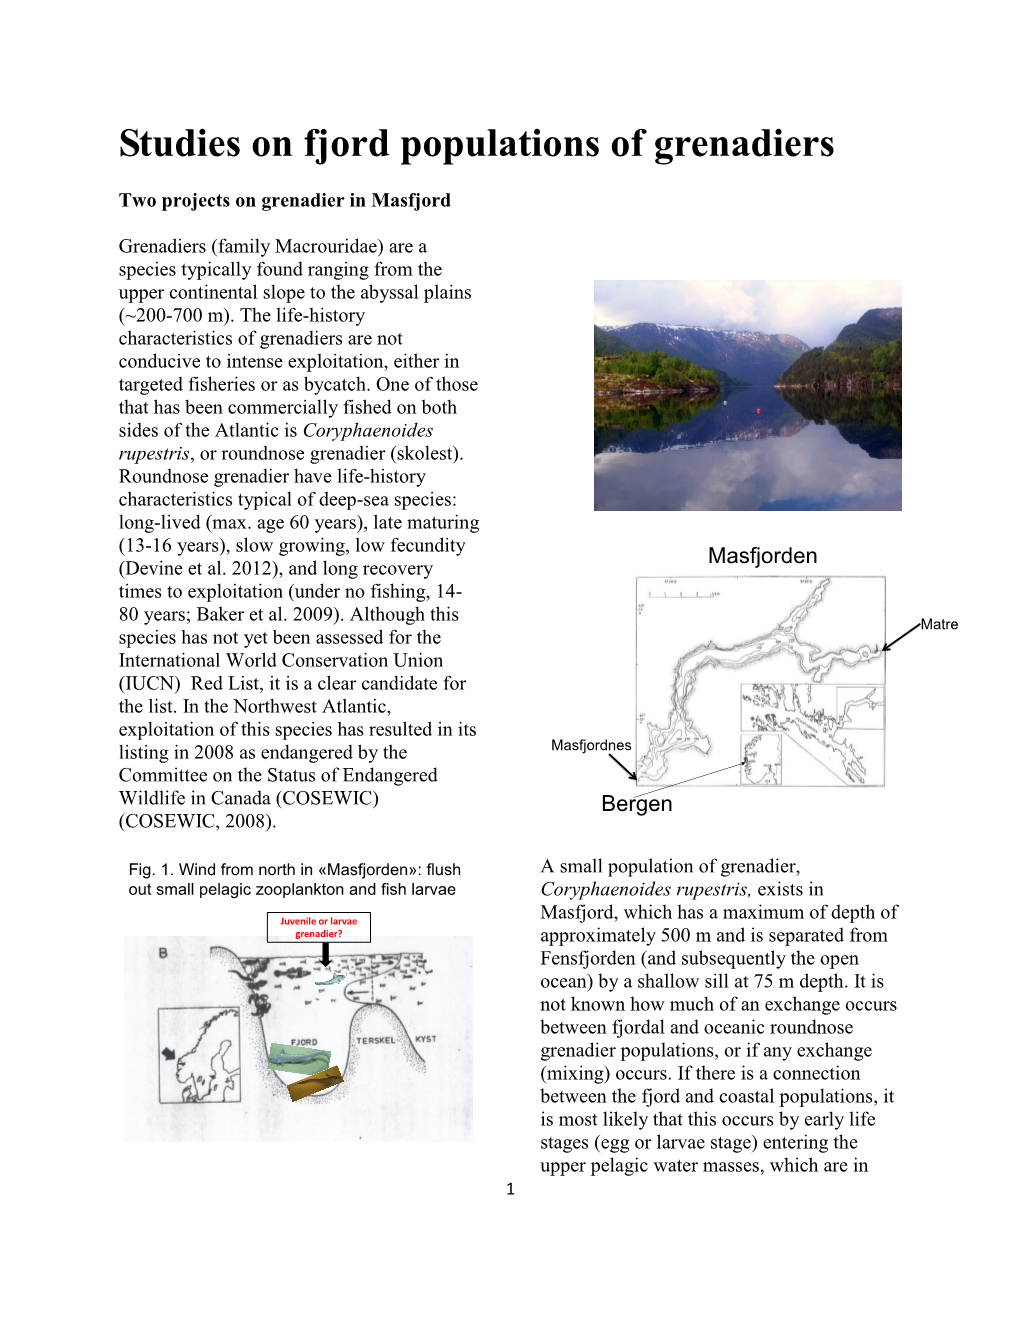 Studies on Fjord Populations of Grenadiers